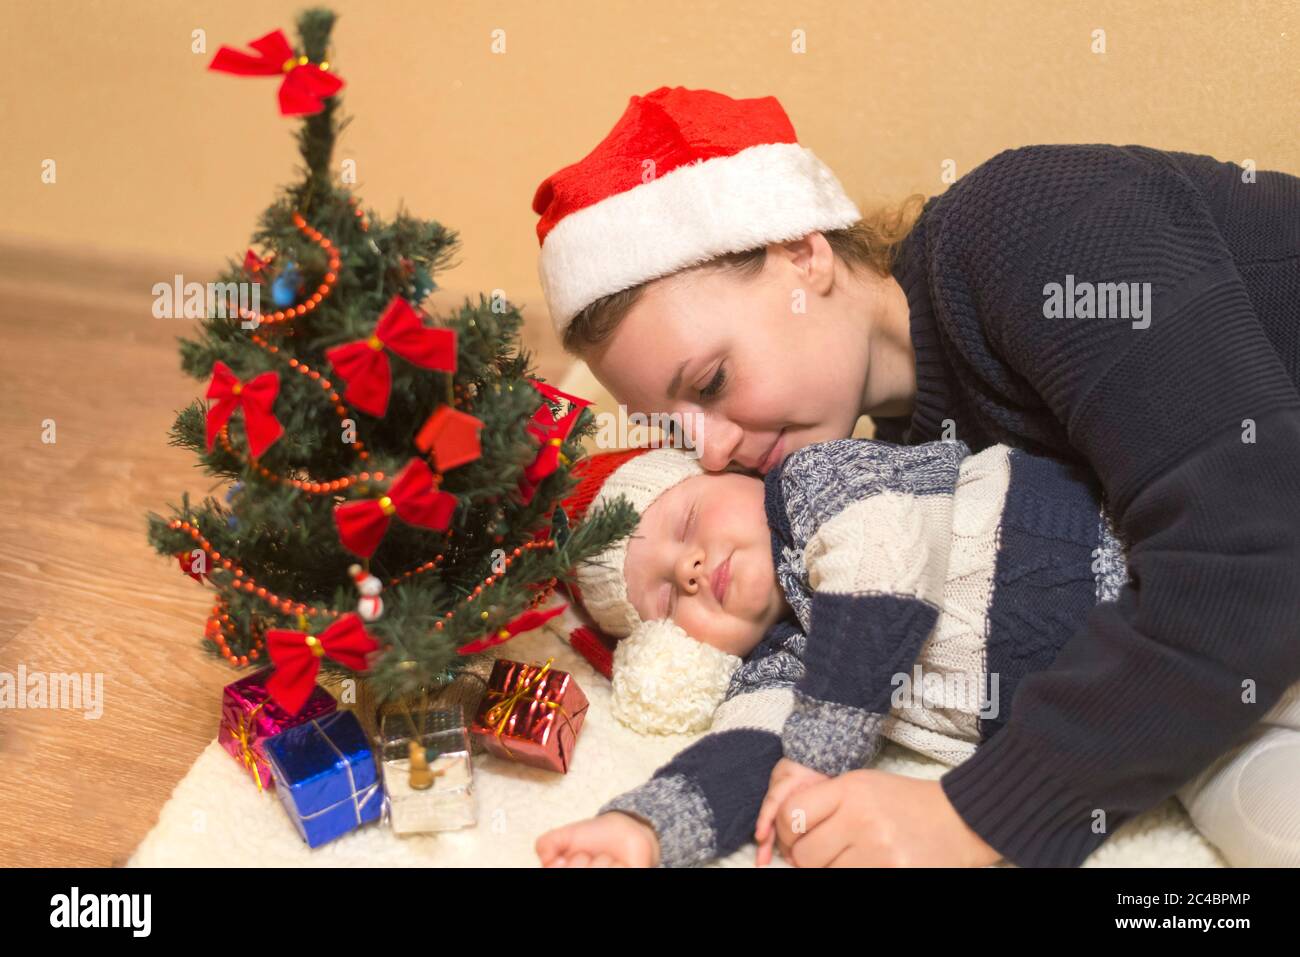 Maman câle son bébé endormi dans un chapeau de Père Noël Photo Stock - Alamy